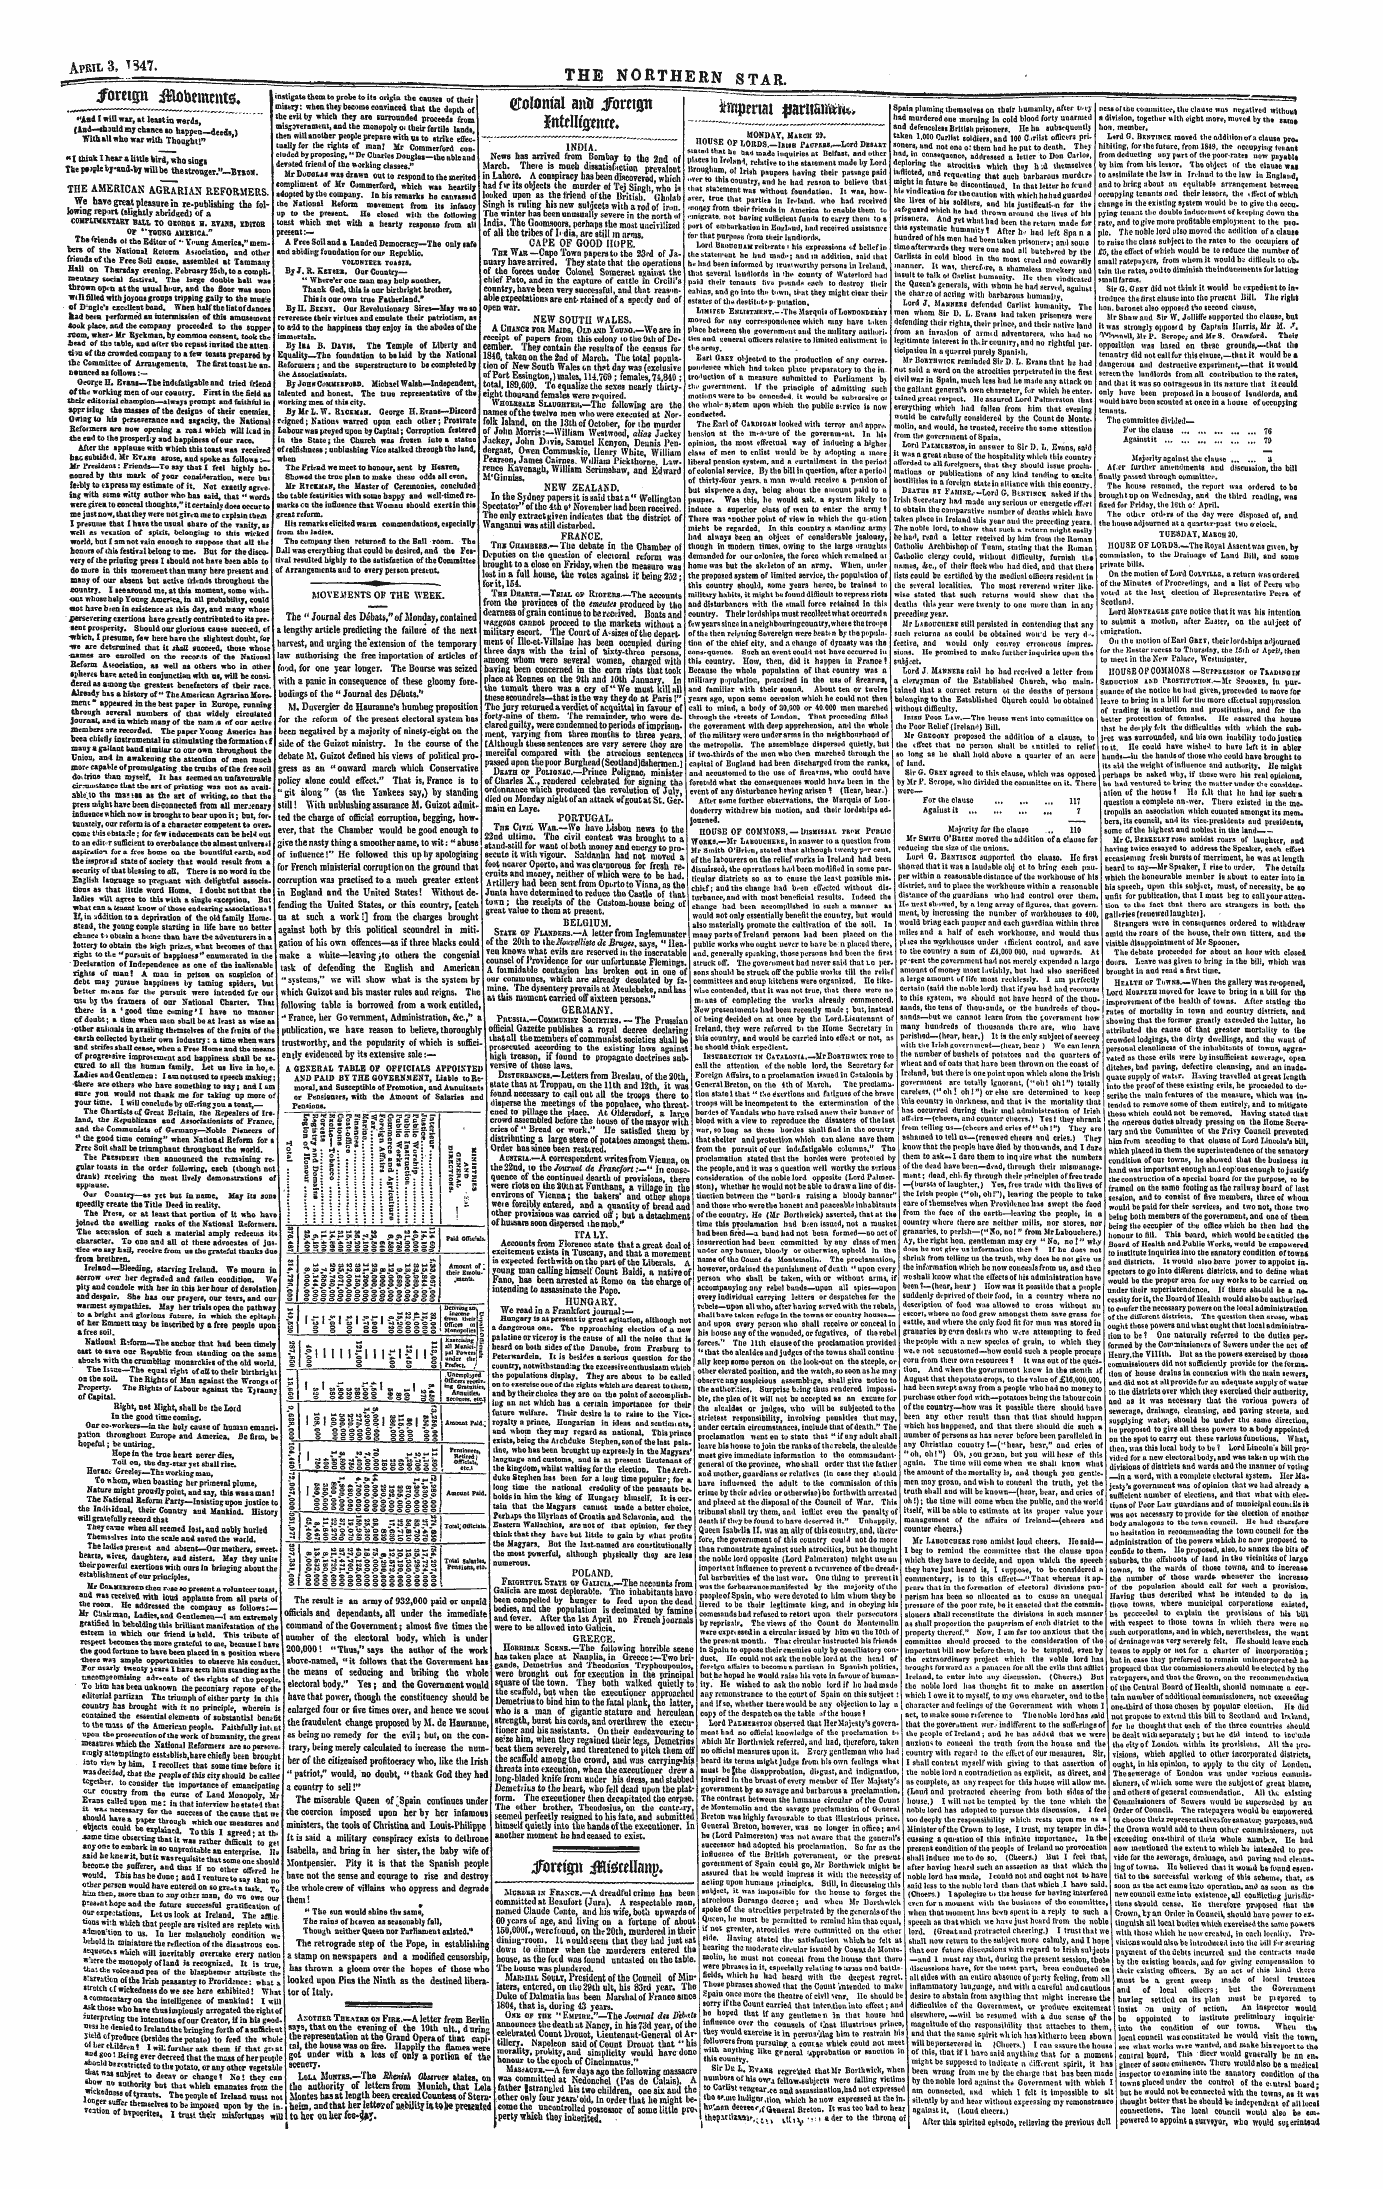 Northern Star (1837-1852): jS F Y, 1st edition - — ^ I——^^— ^ I—^^M Cjotomai Aito Fovn^N Iitfellfjpntr. '